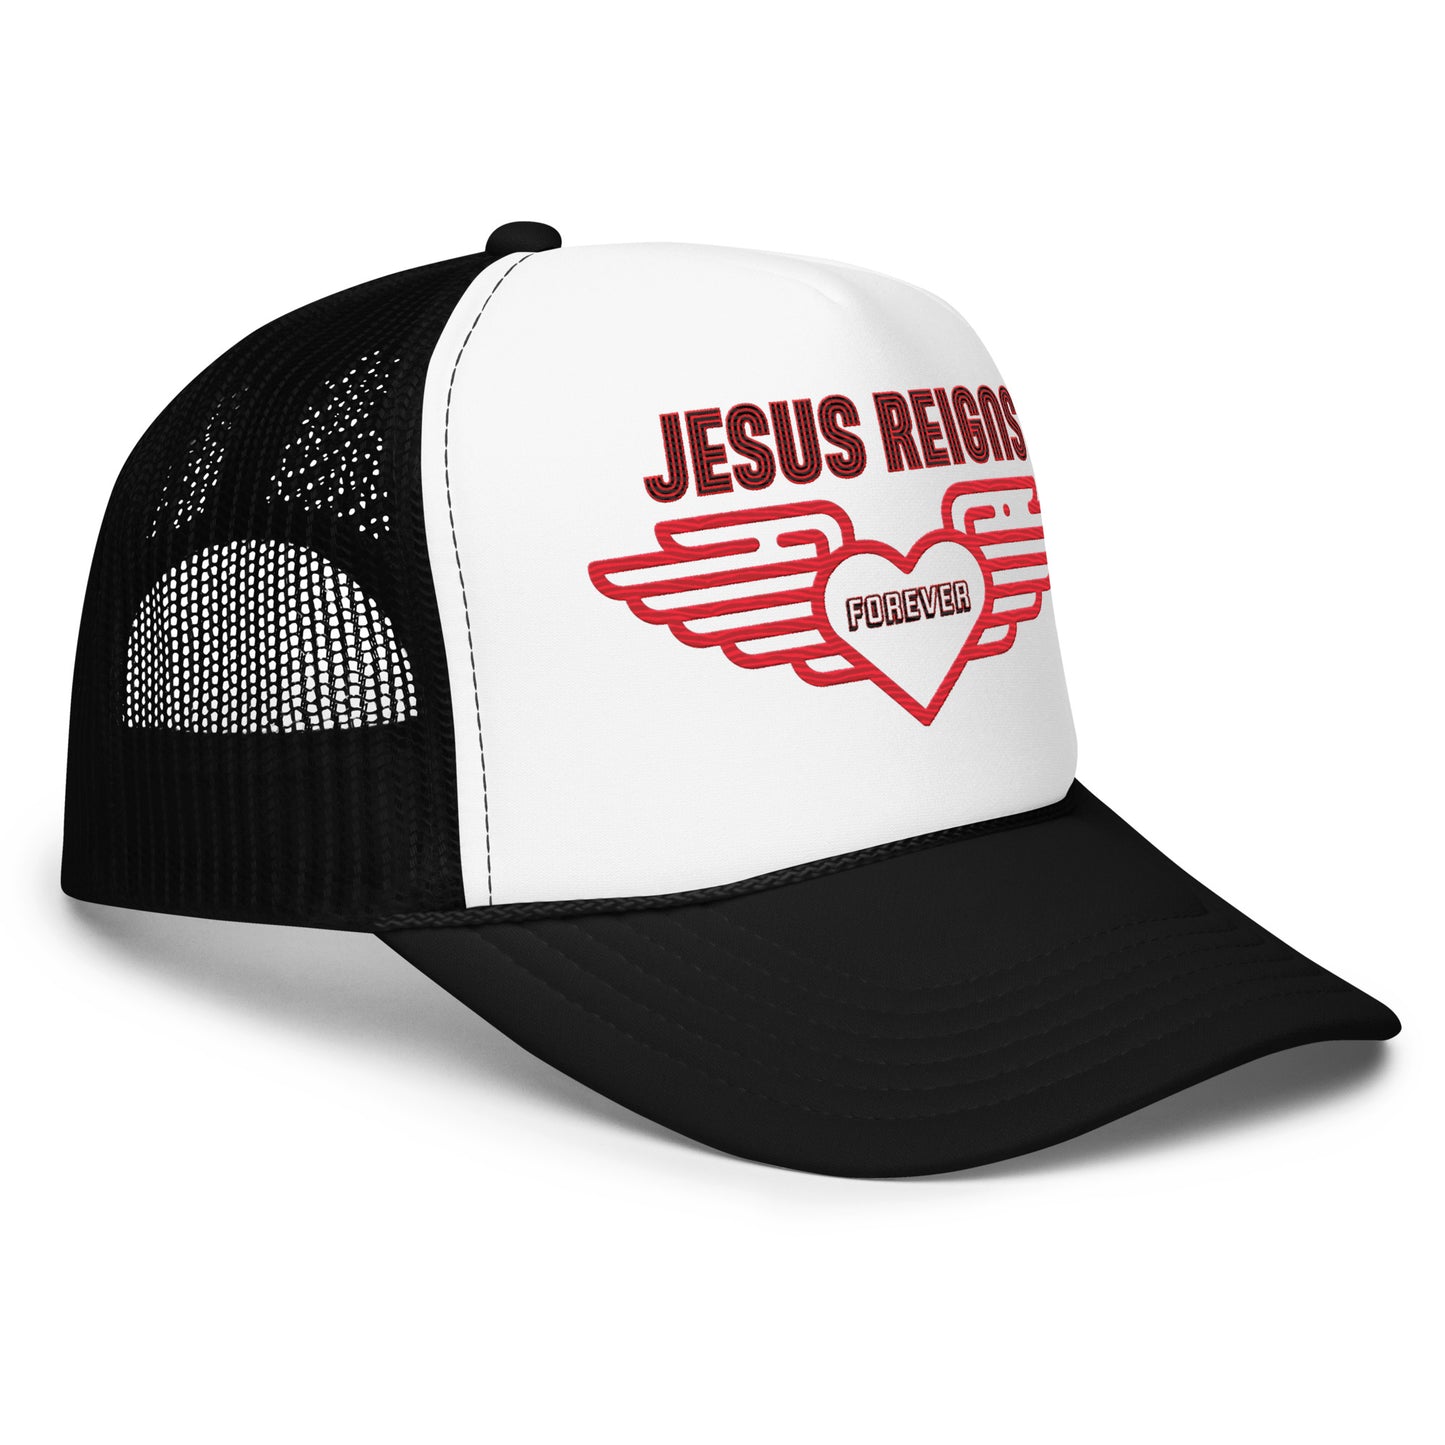 JESUS REIGNS FOREVER- Foam trucker hat